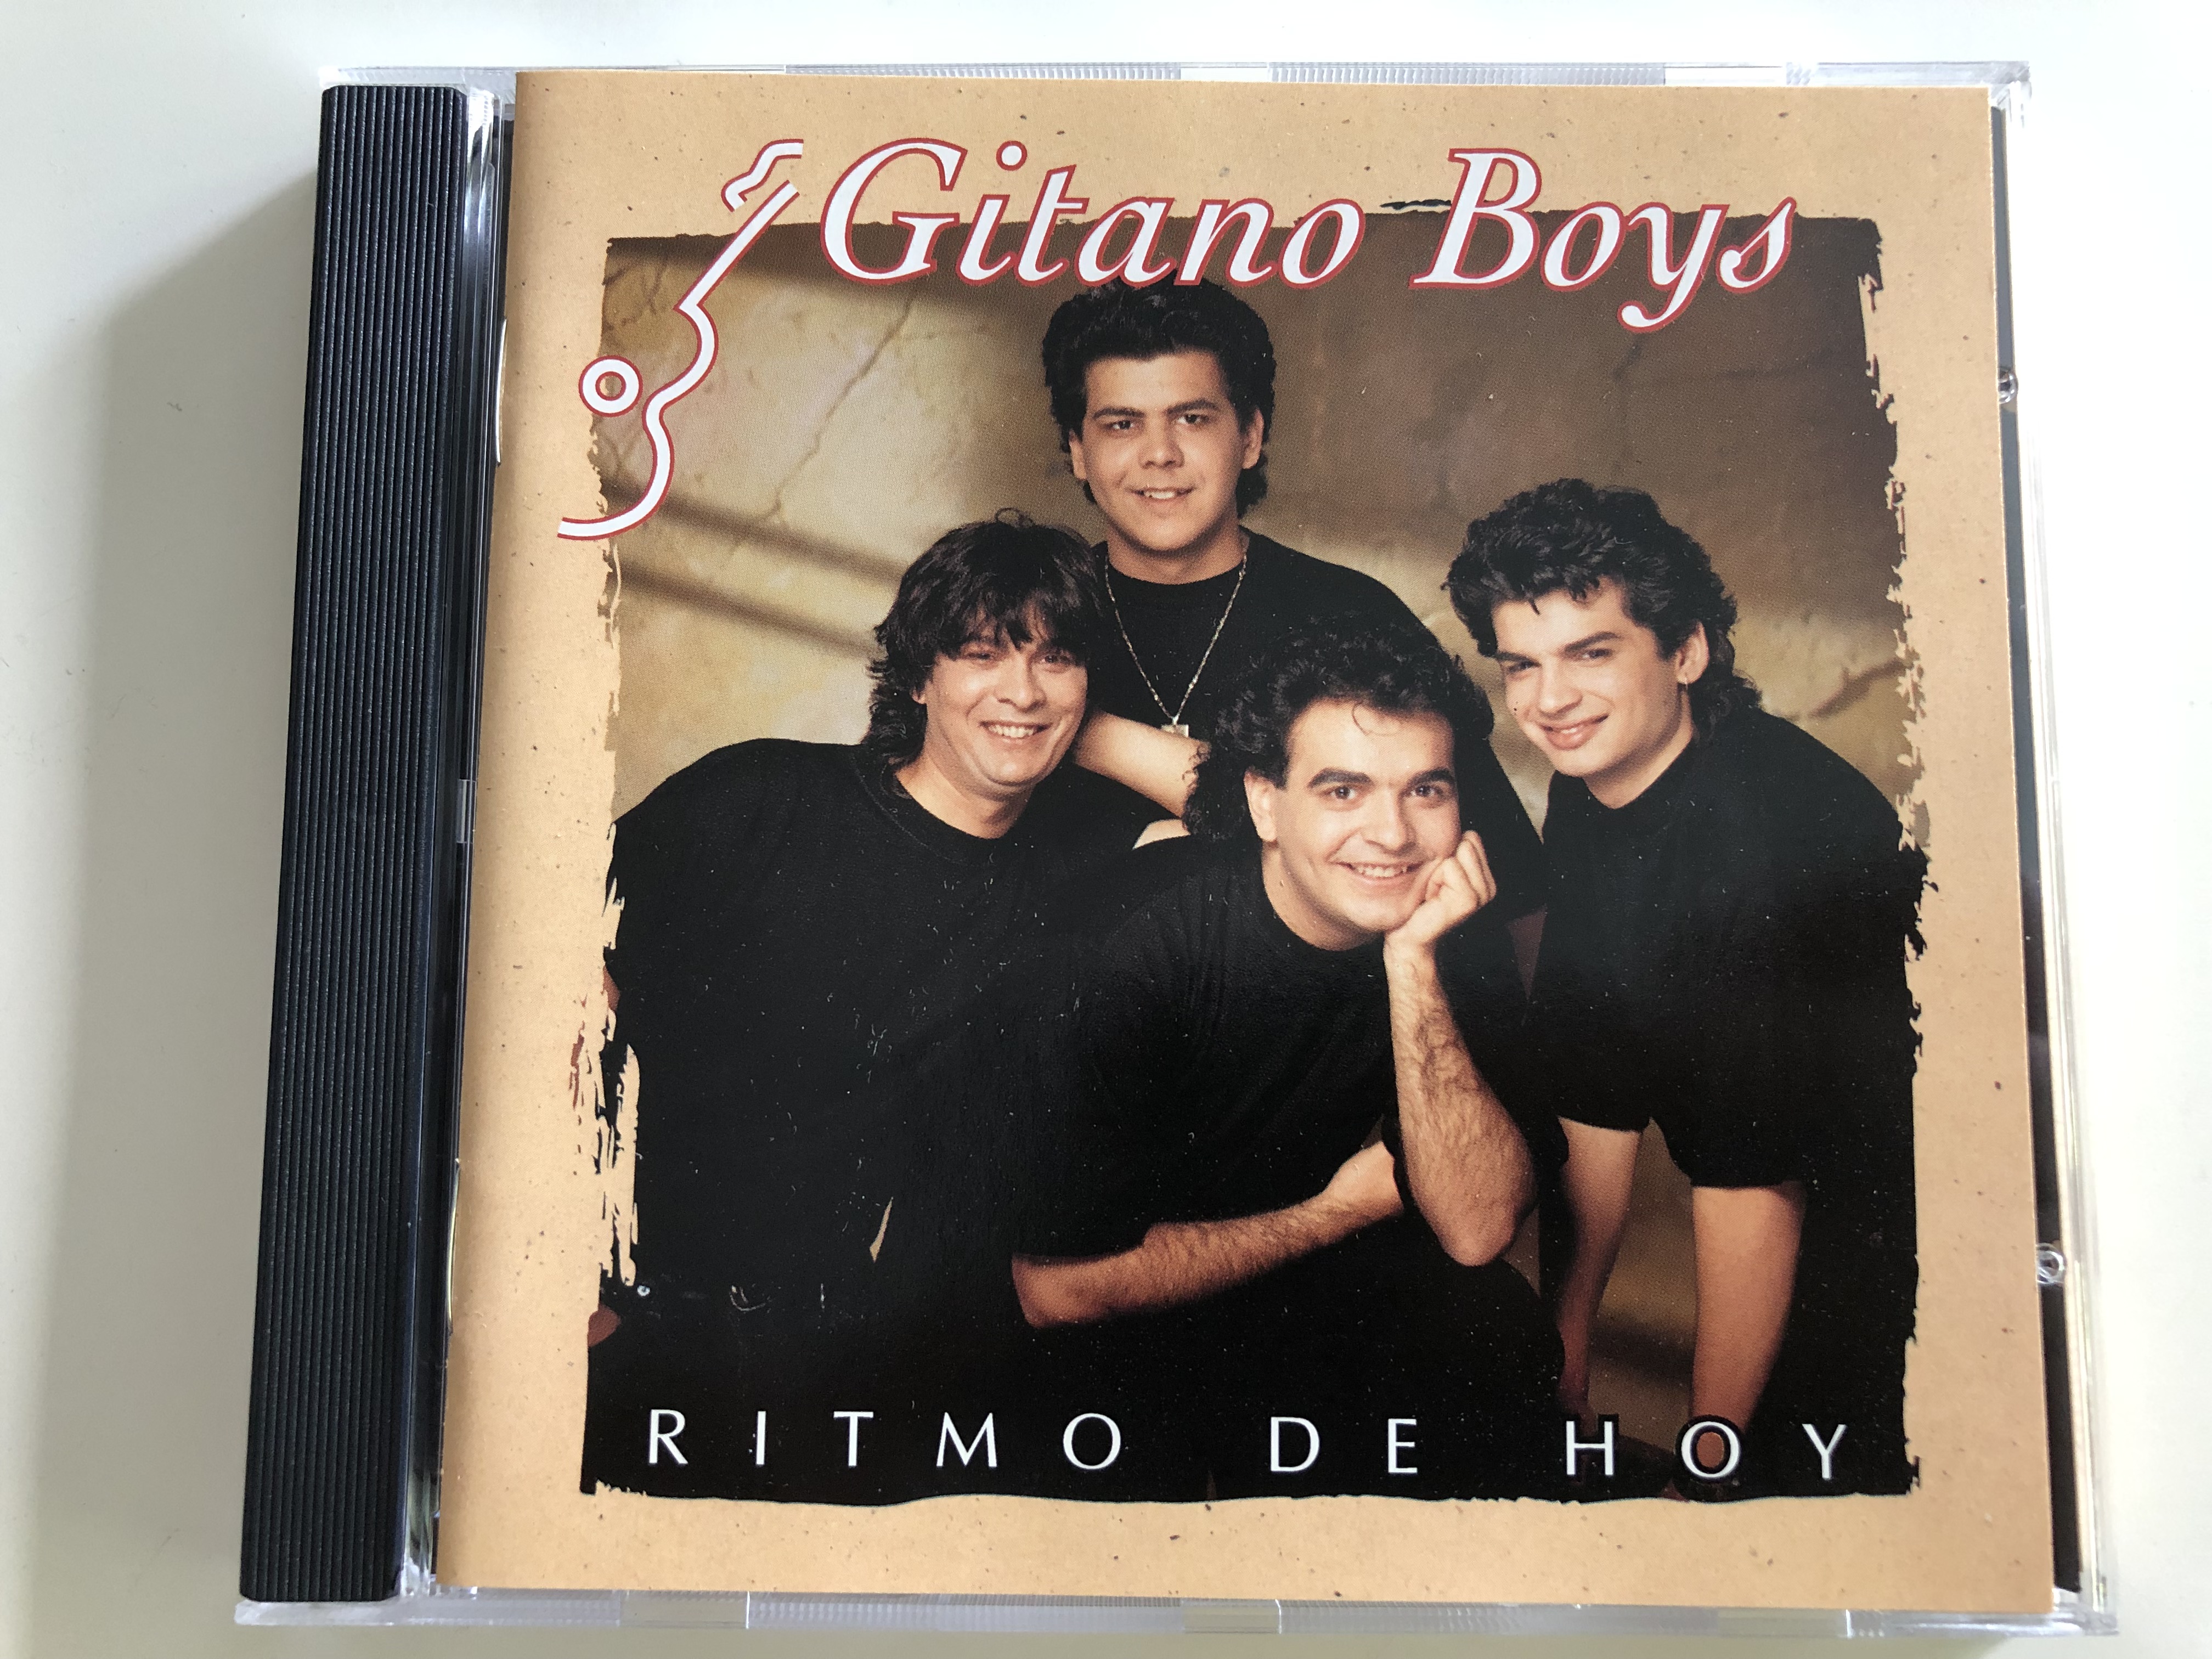 gitano-boys-ritmo-de-hoy-audio-cd-1992-polydor-mc-513426-4-1-.jpg